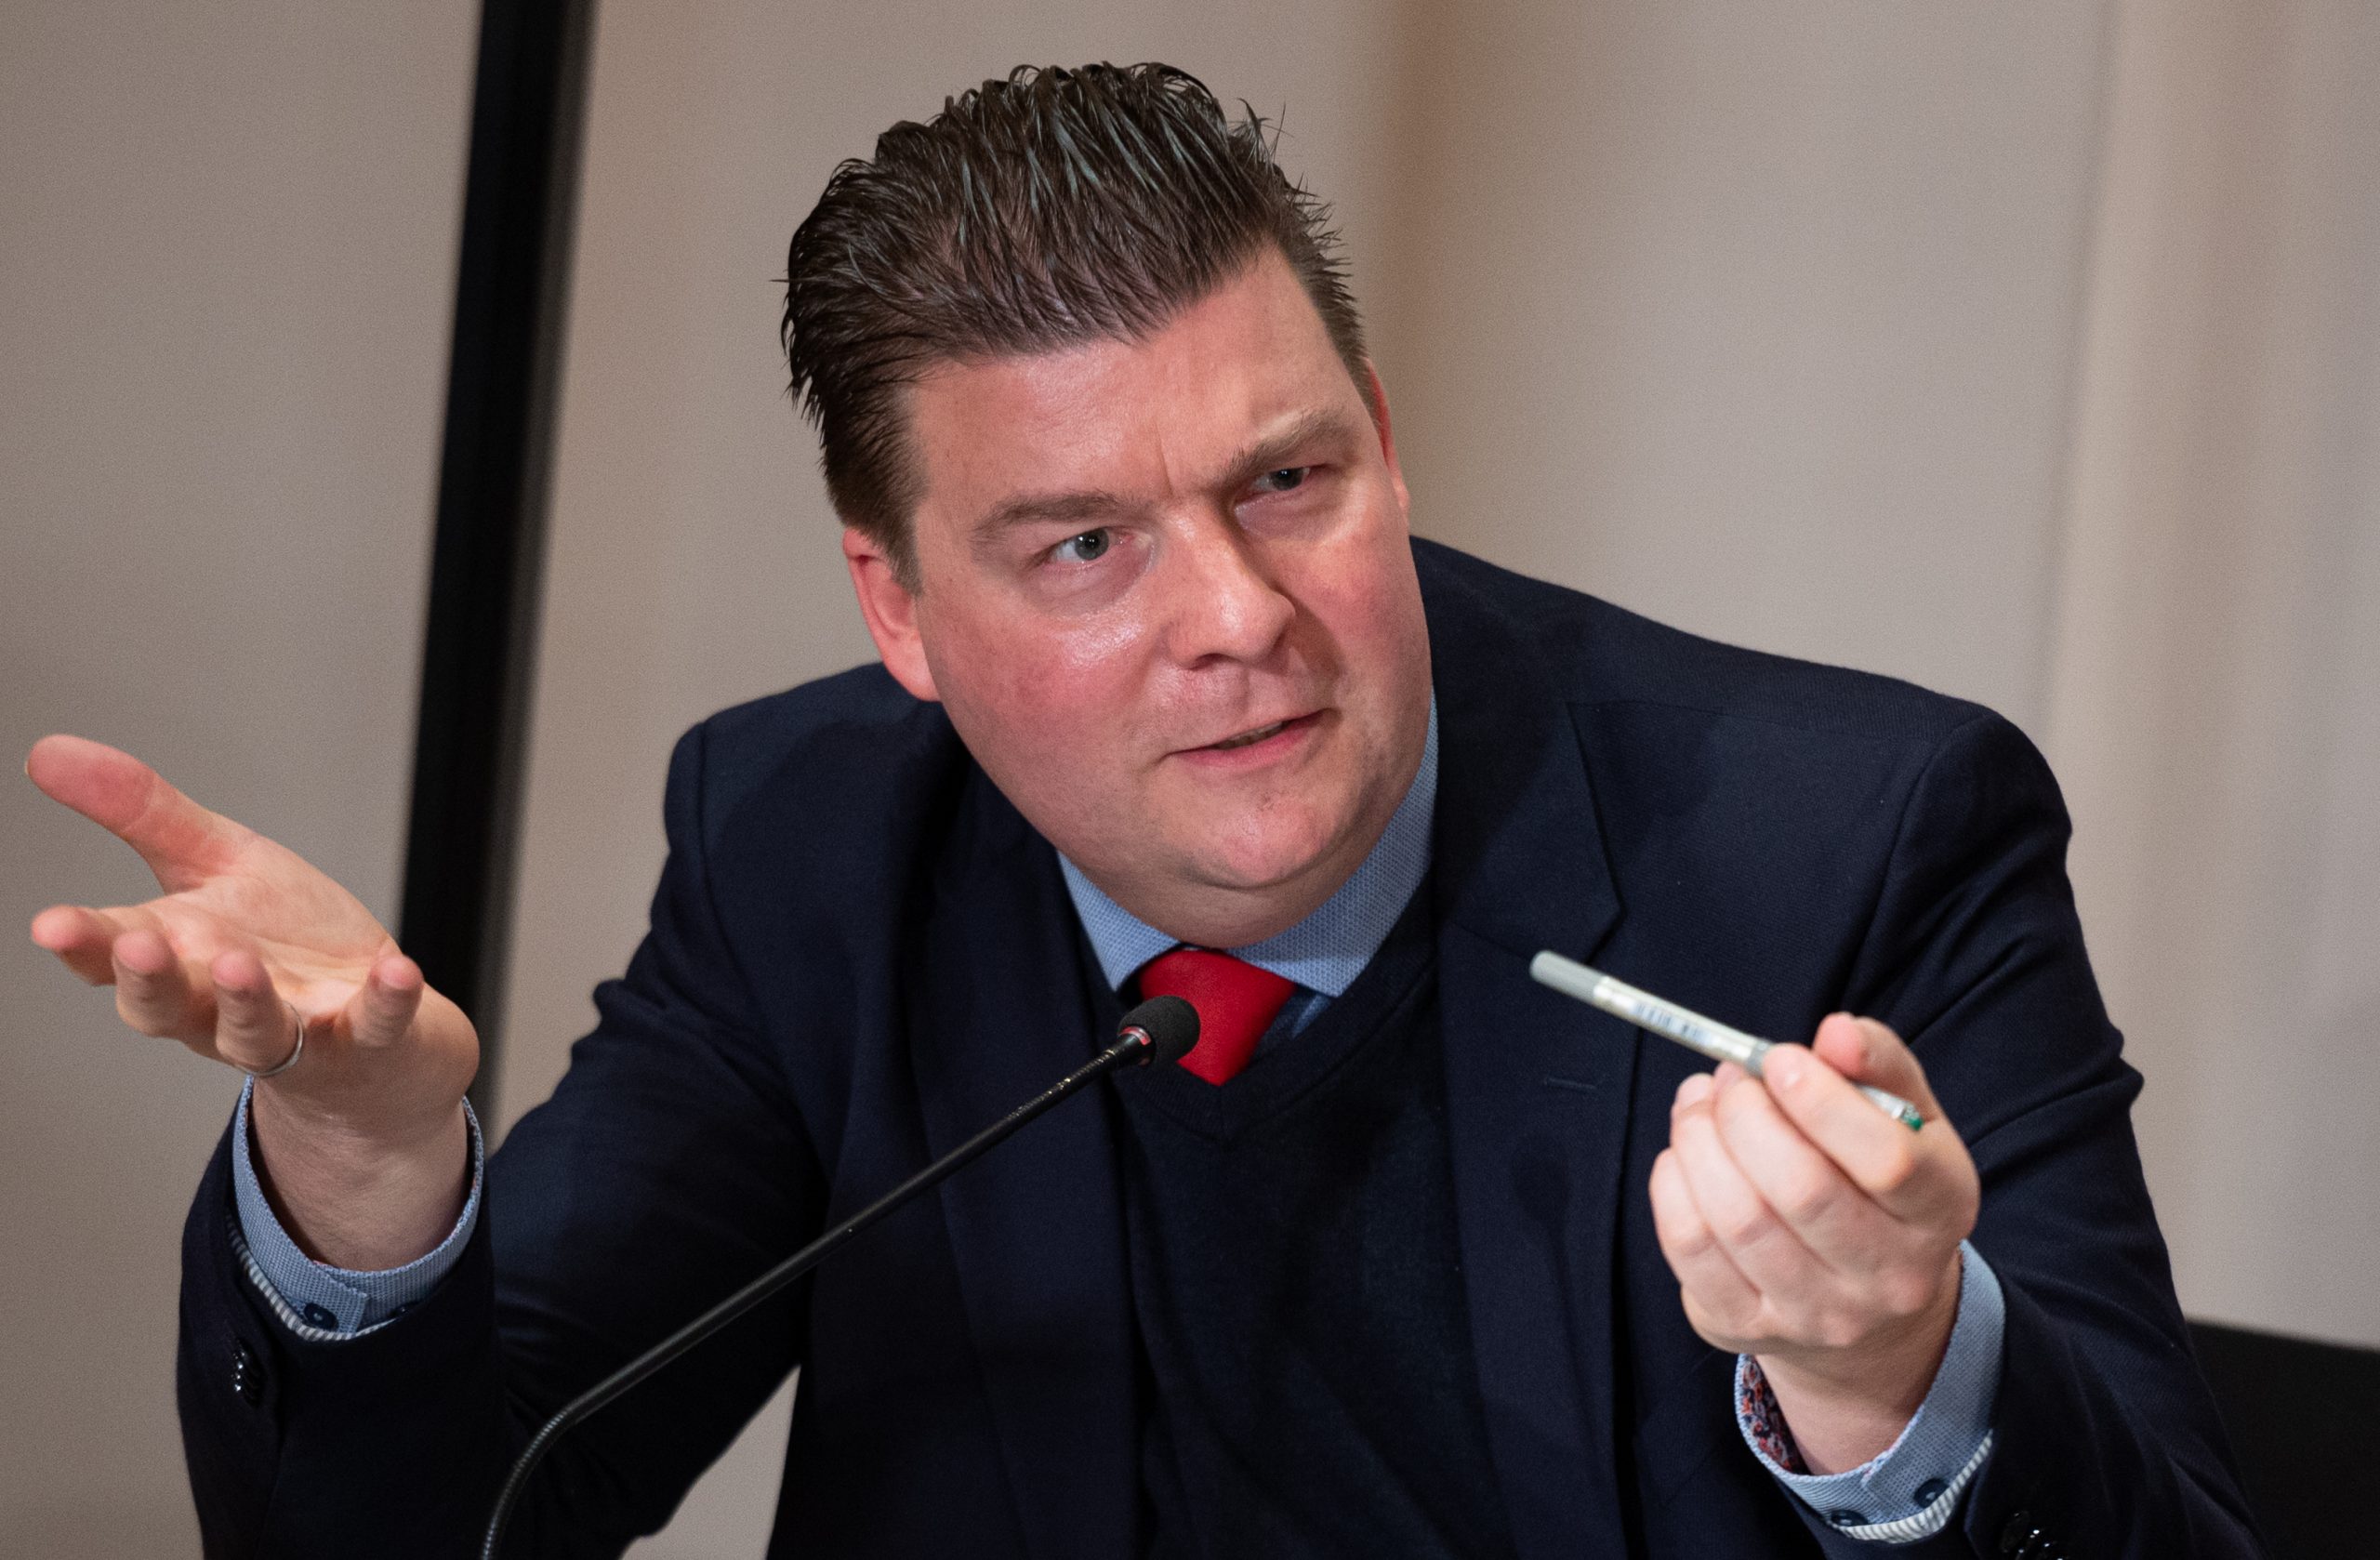 Hamburgs Finanzseantor Andreas Dressel (SPD) hält die Debatte rund um das Steuer-Portal in Baden-Württemberg für überzogen.